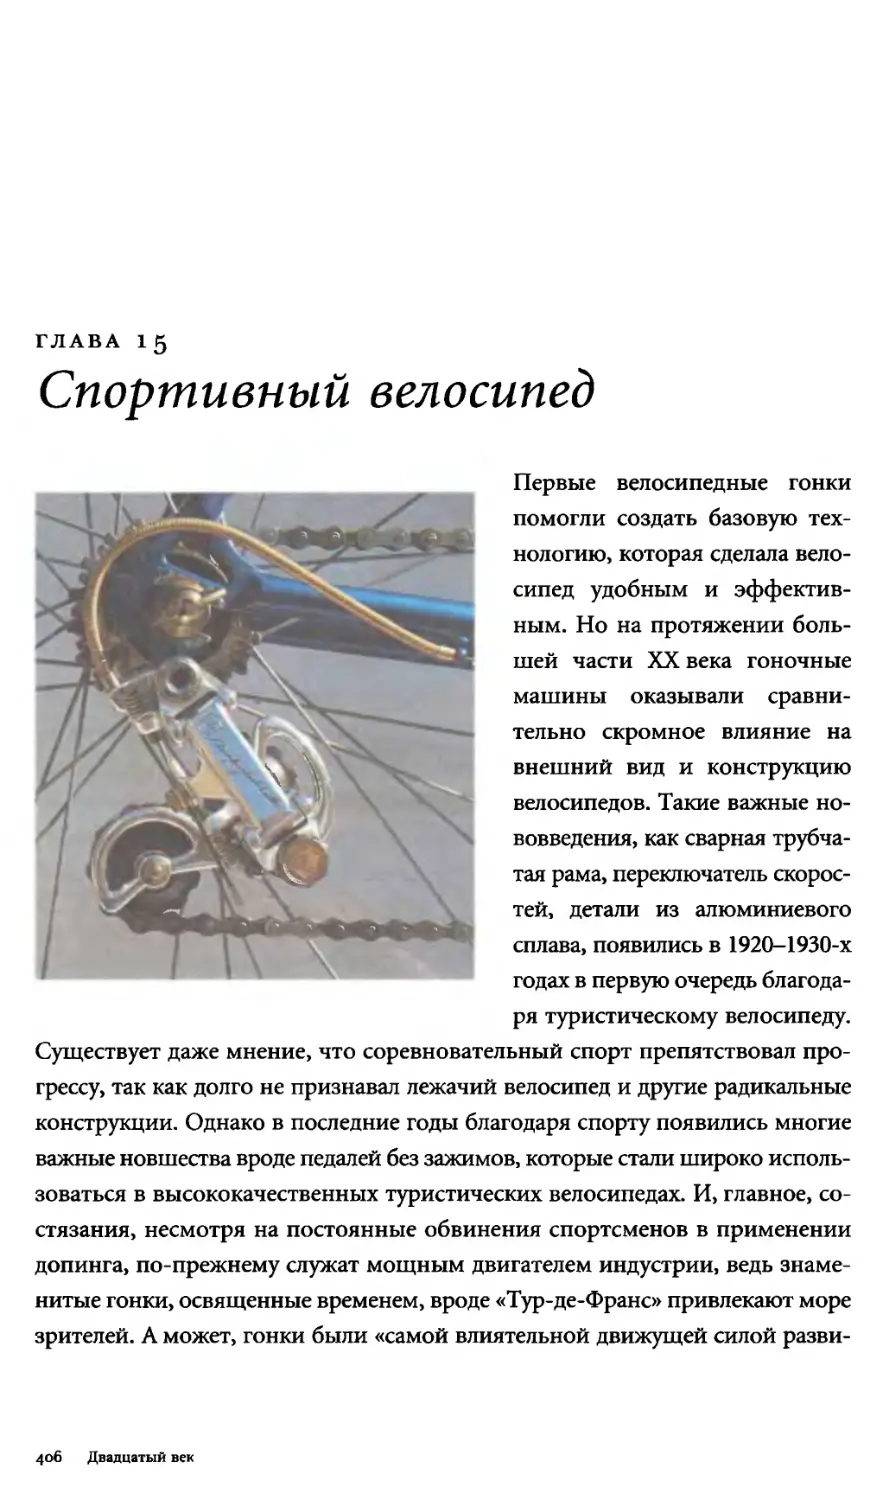 Глава 15. Спортивный велосипед